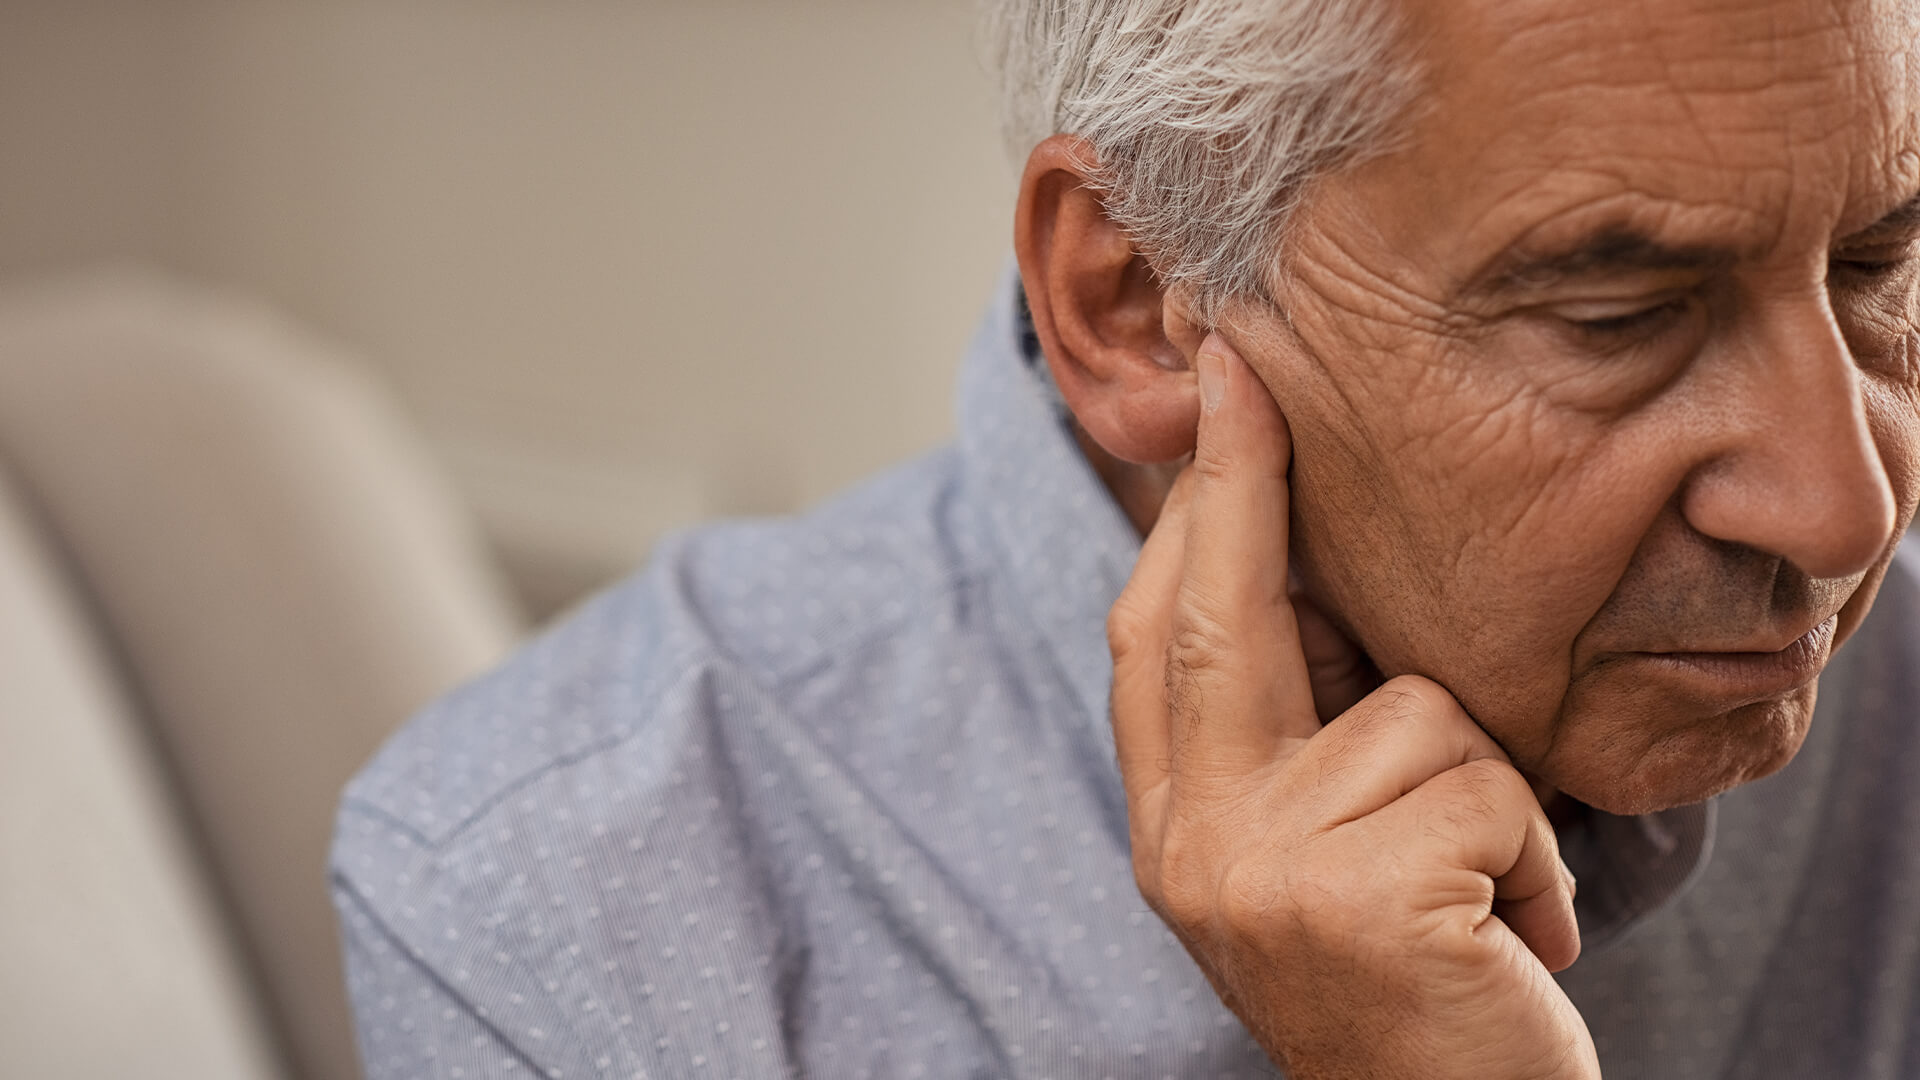 10 Warning Signs Of Hearing Loss